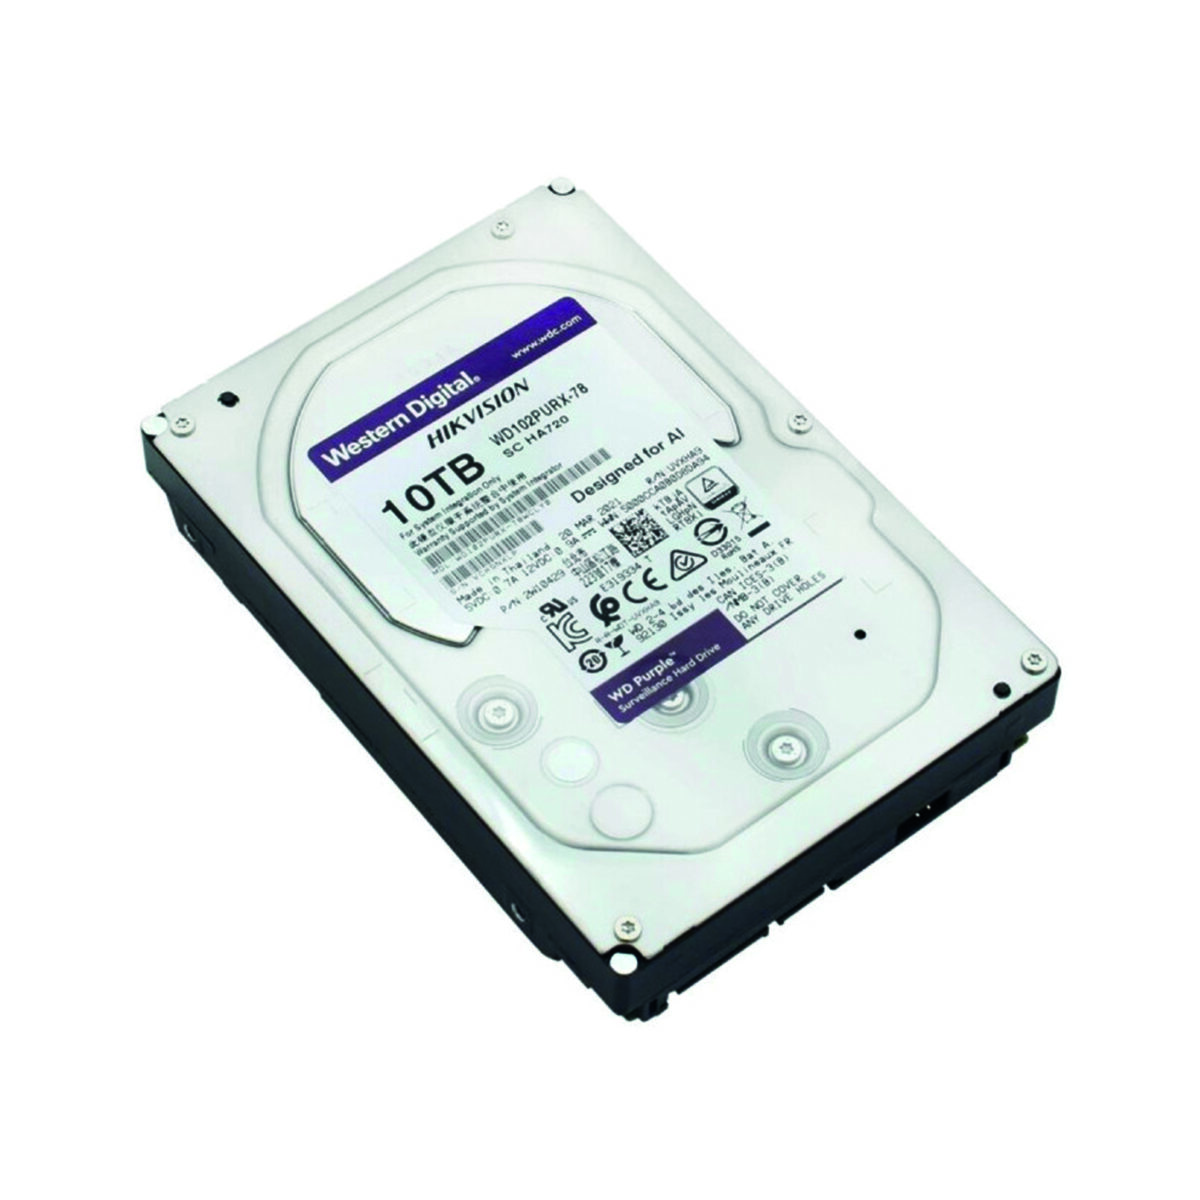 Disque dur interne 3.5" Western Digital Purple 10To pour les systèmes de vidéosurveillance et de sécurité (WD102PURX-78)